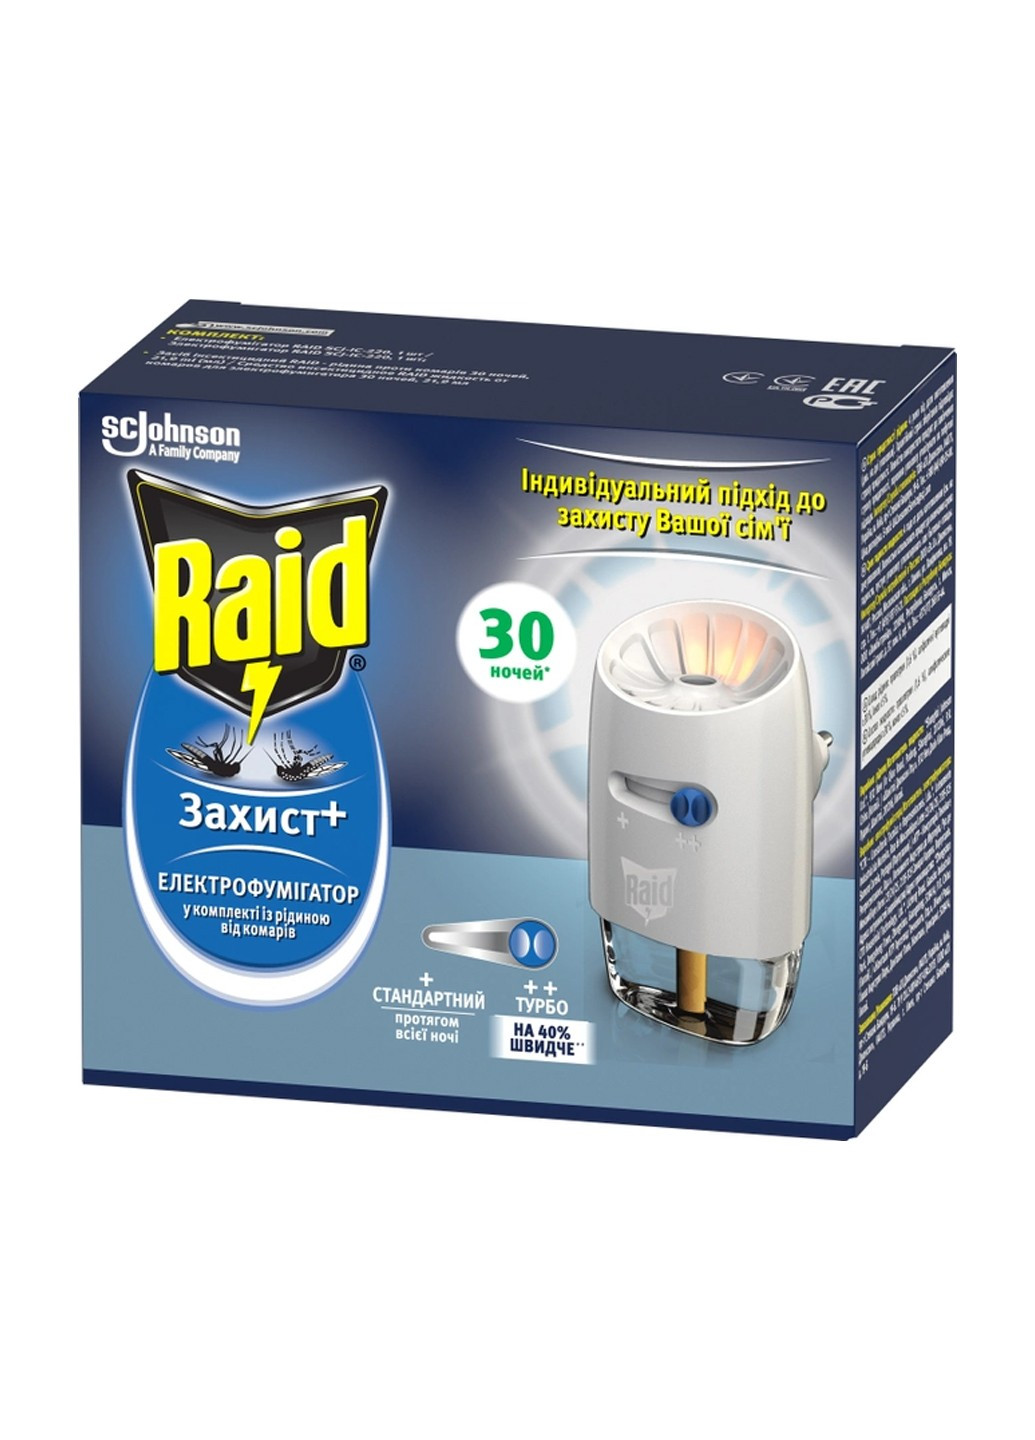 Электрофумигатор Защита+ с жидкостью против комаров и регулятором интенсивности 30 ночей Raid (293377717)